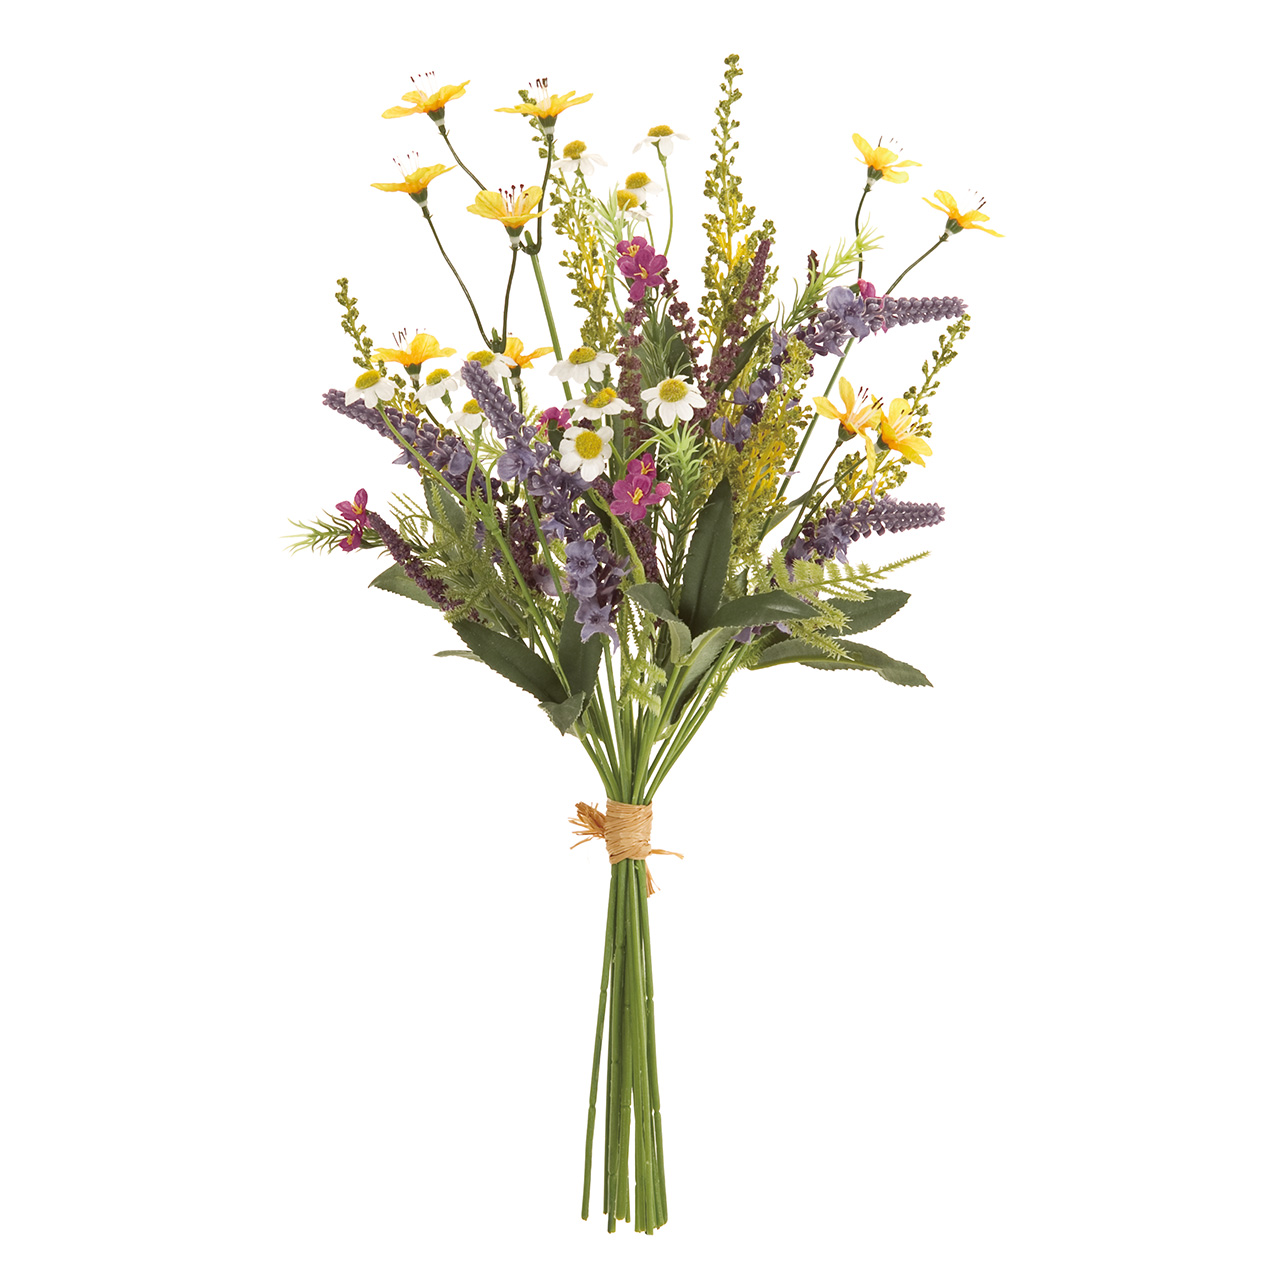 マイフラ 通販 Magiq ミックスガーデンブーケ アーティフィシャルフラワー 造花 Fm0015 ラベンダー 花径 約2 3 5 ブーケの全長 約41cm ミックス Magiq アーティフィシャルフラワー 造花 全国にmagiq 花器 花資材などをお届けします